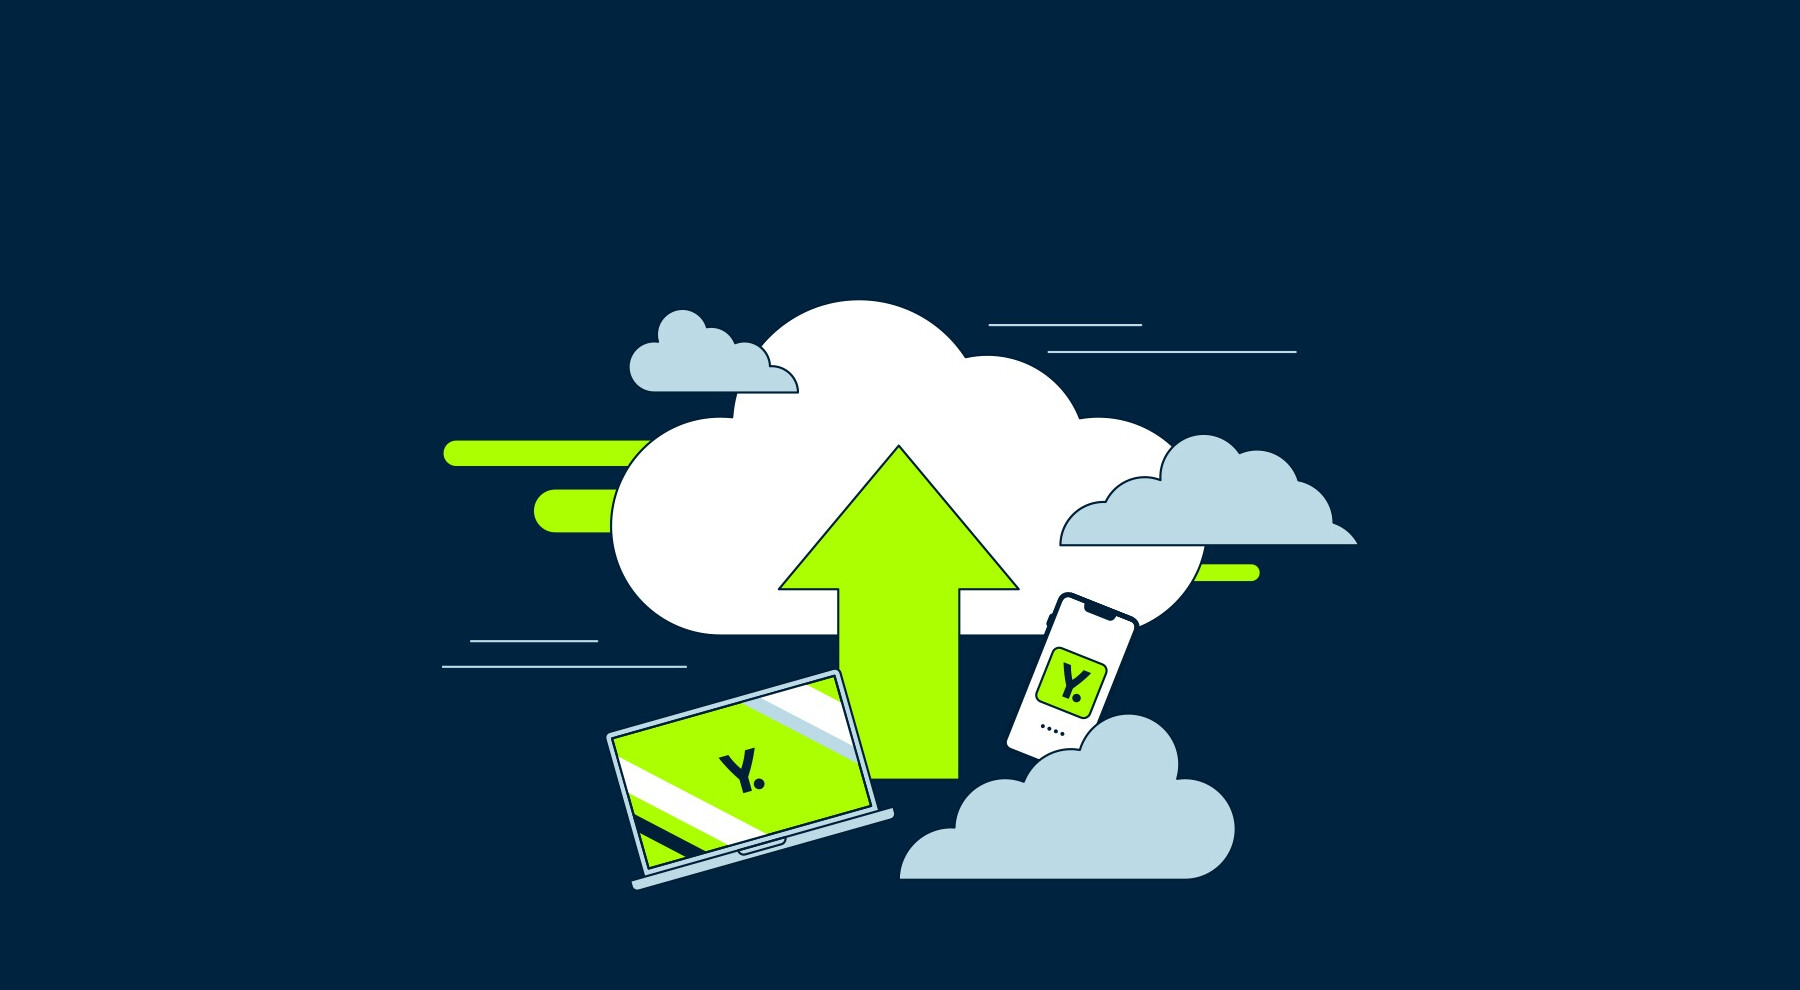 Illusztráció a Yettel felhő szolgáltatásáról. A képen egy laptop, egy mobilfelefon és egy felhő látható Yettel logó háttérképpel.